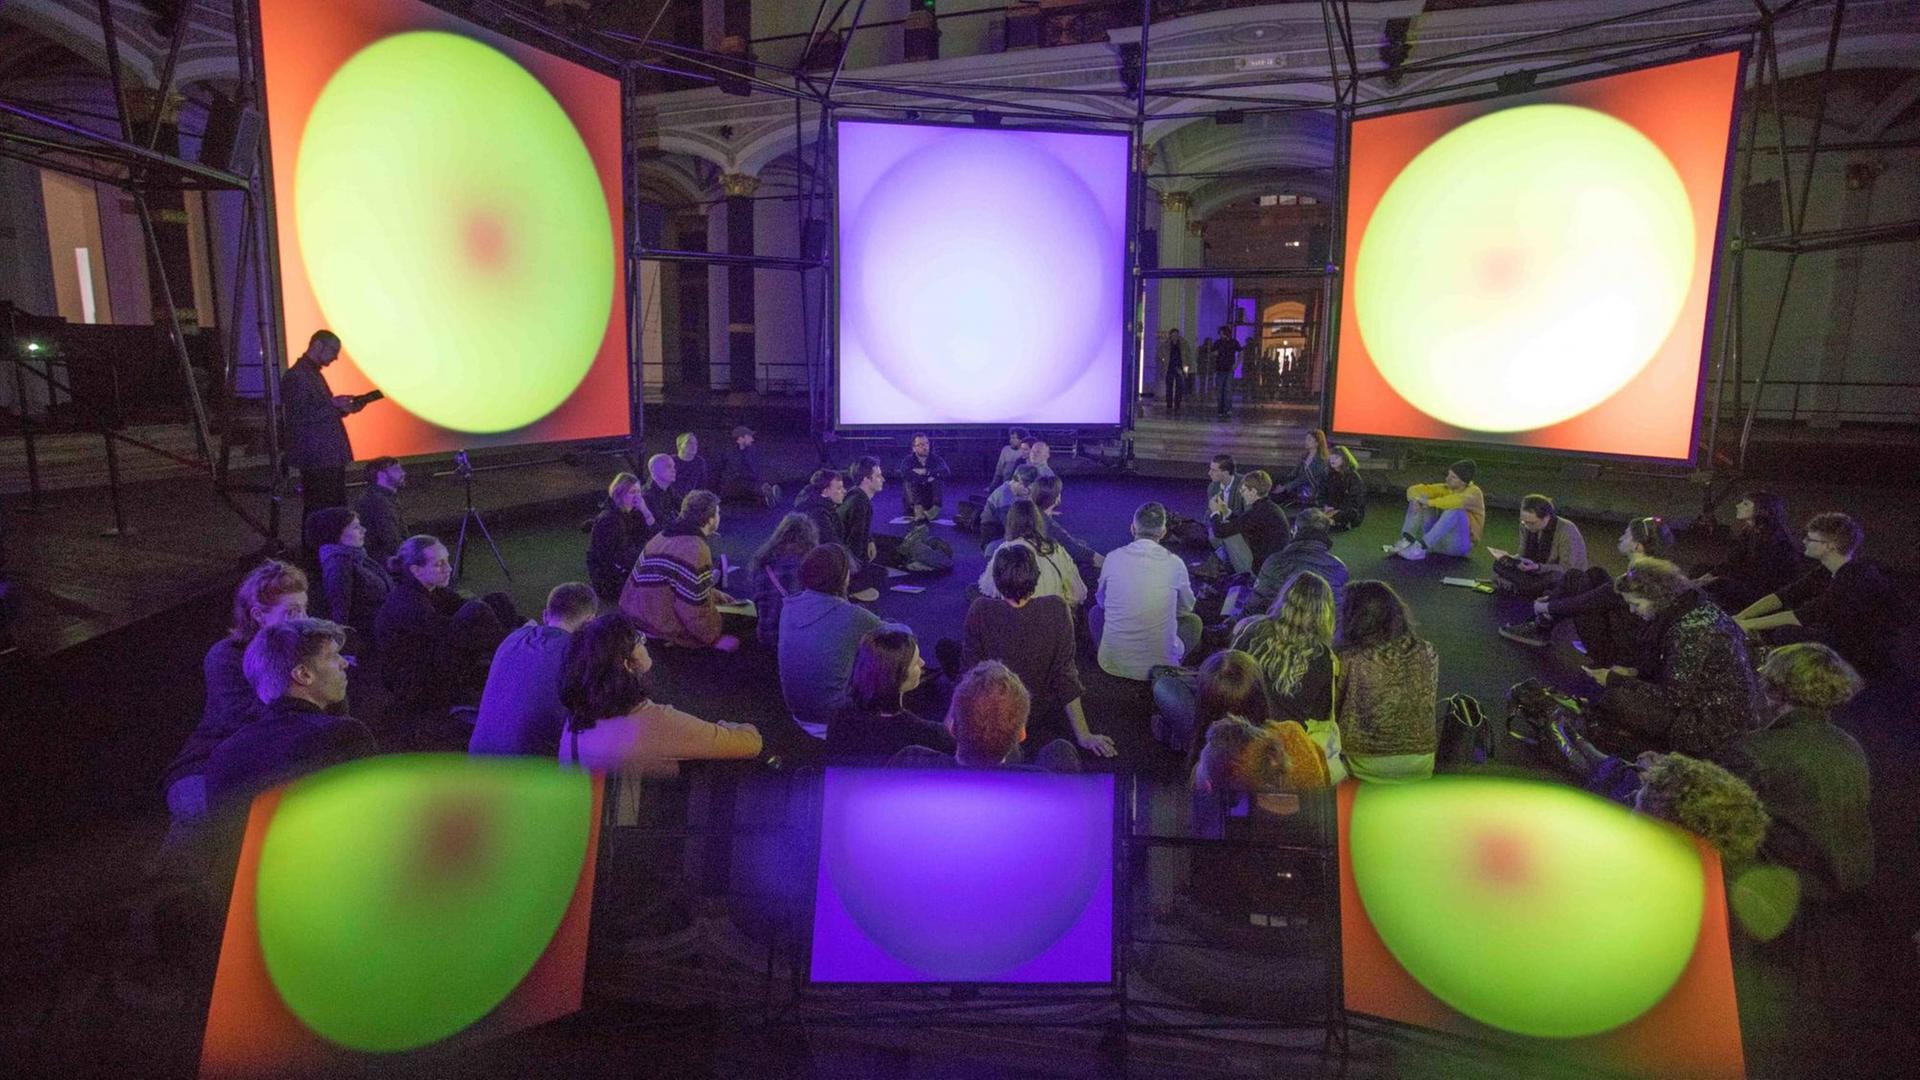 Spiegelung der Installation "Empty Formalism" von Brian Eno im "ISM Hexadome" im Martin-Gropius-Bau. Die Installation zeigt auf Leinwänden farbige, sich kontinuierlich wandelnde Flächen, dazu sind sphärische Klänge zu hören.